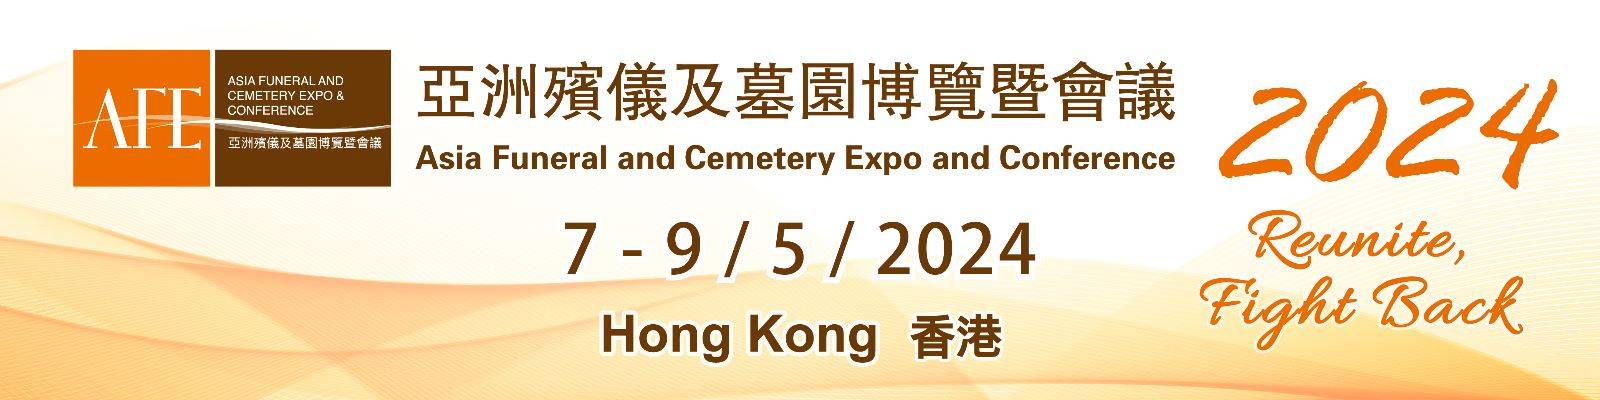 中国香港国际殡仪及墓园展览会ASIAFUNERALEXPO